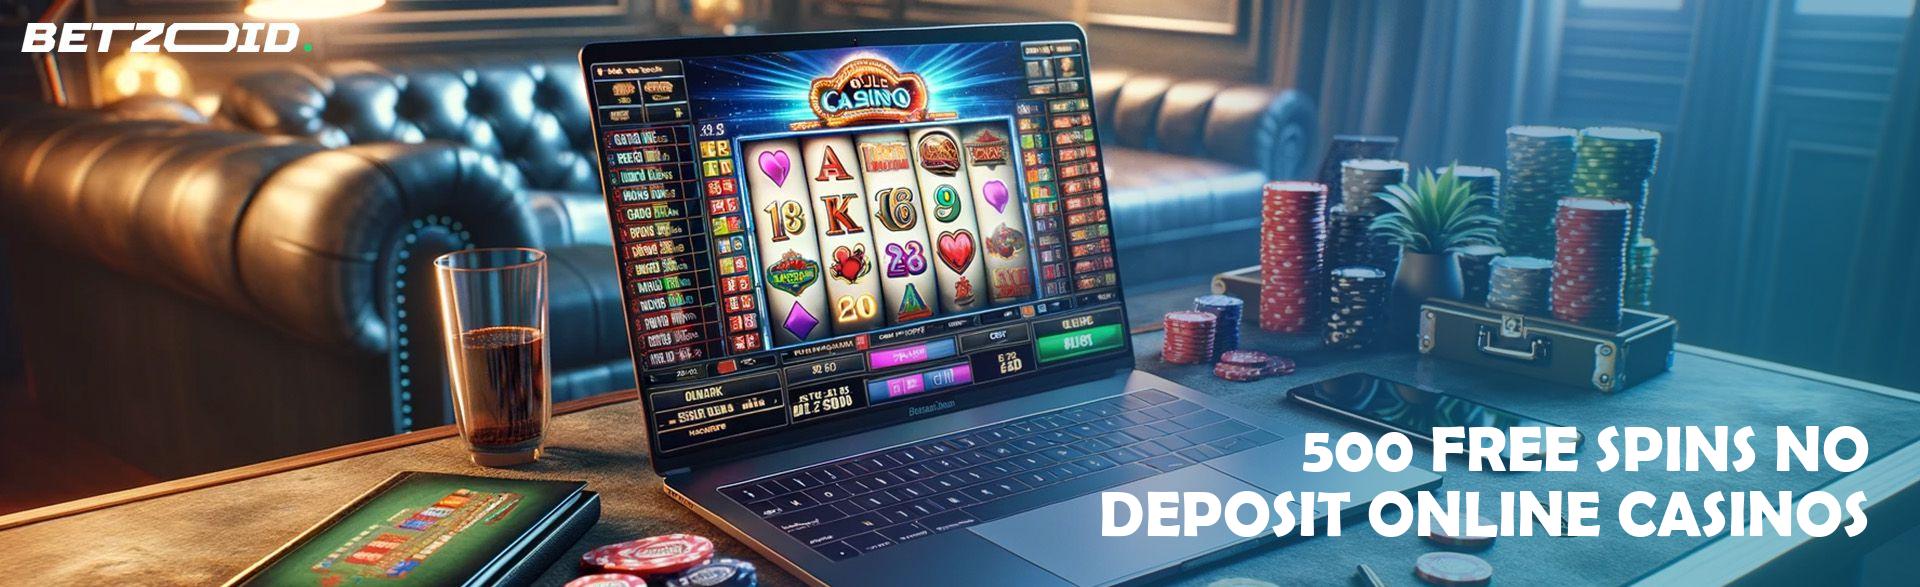 500 Free Spins No Deposit Online Casinos.